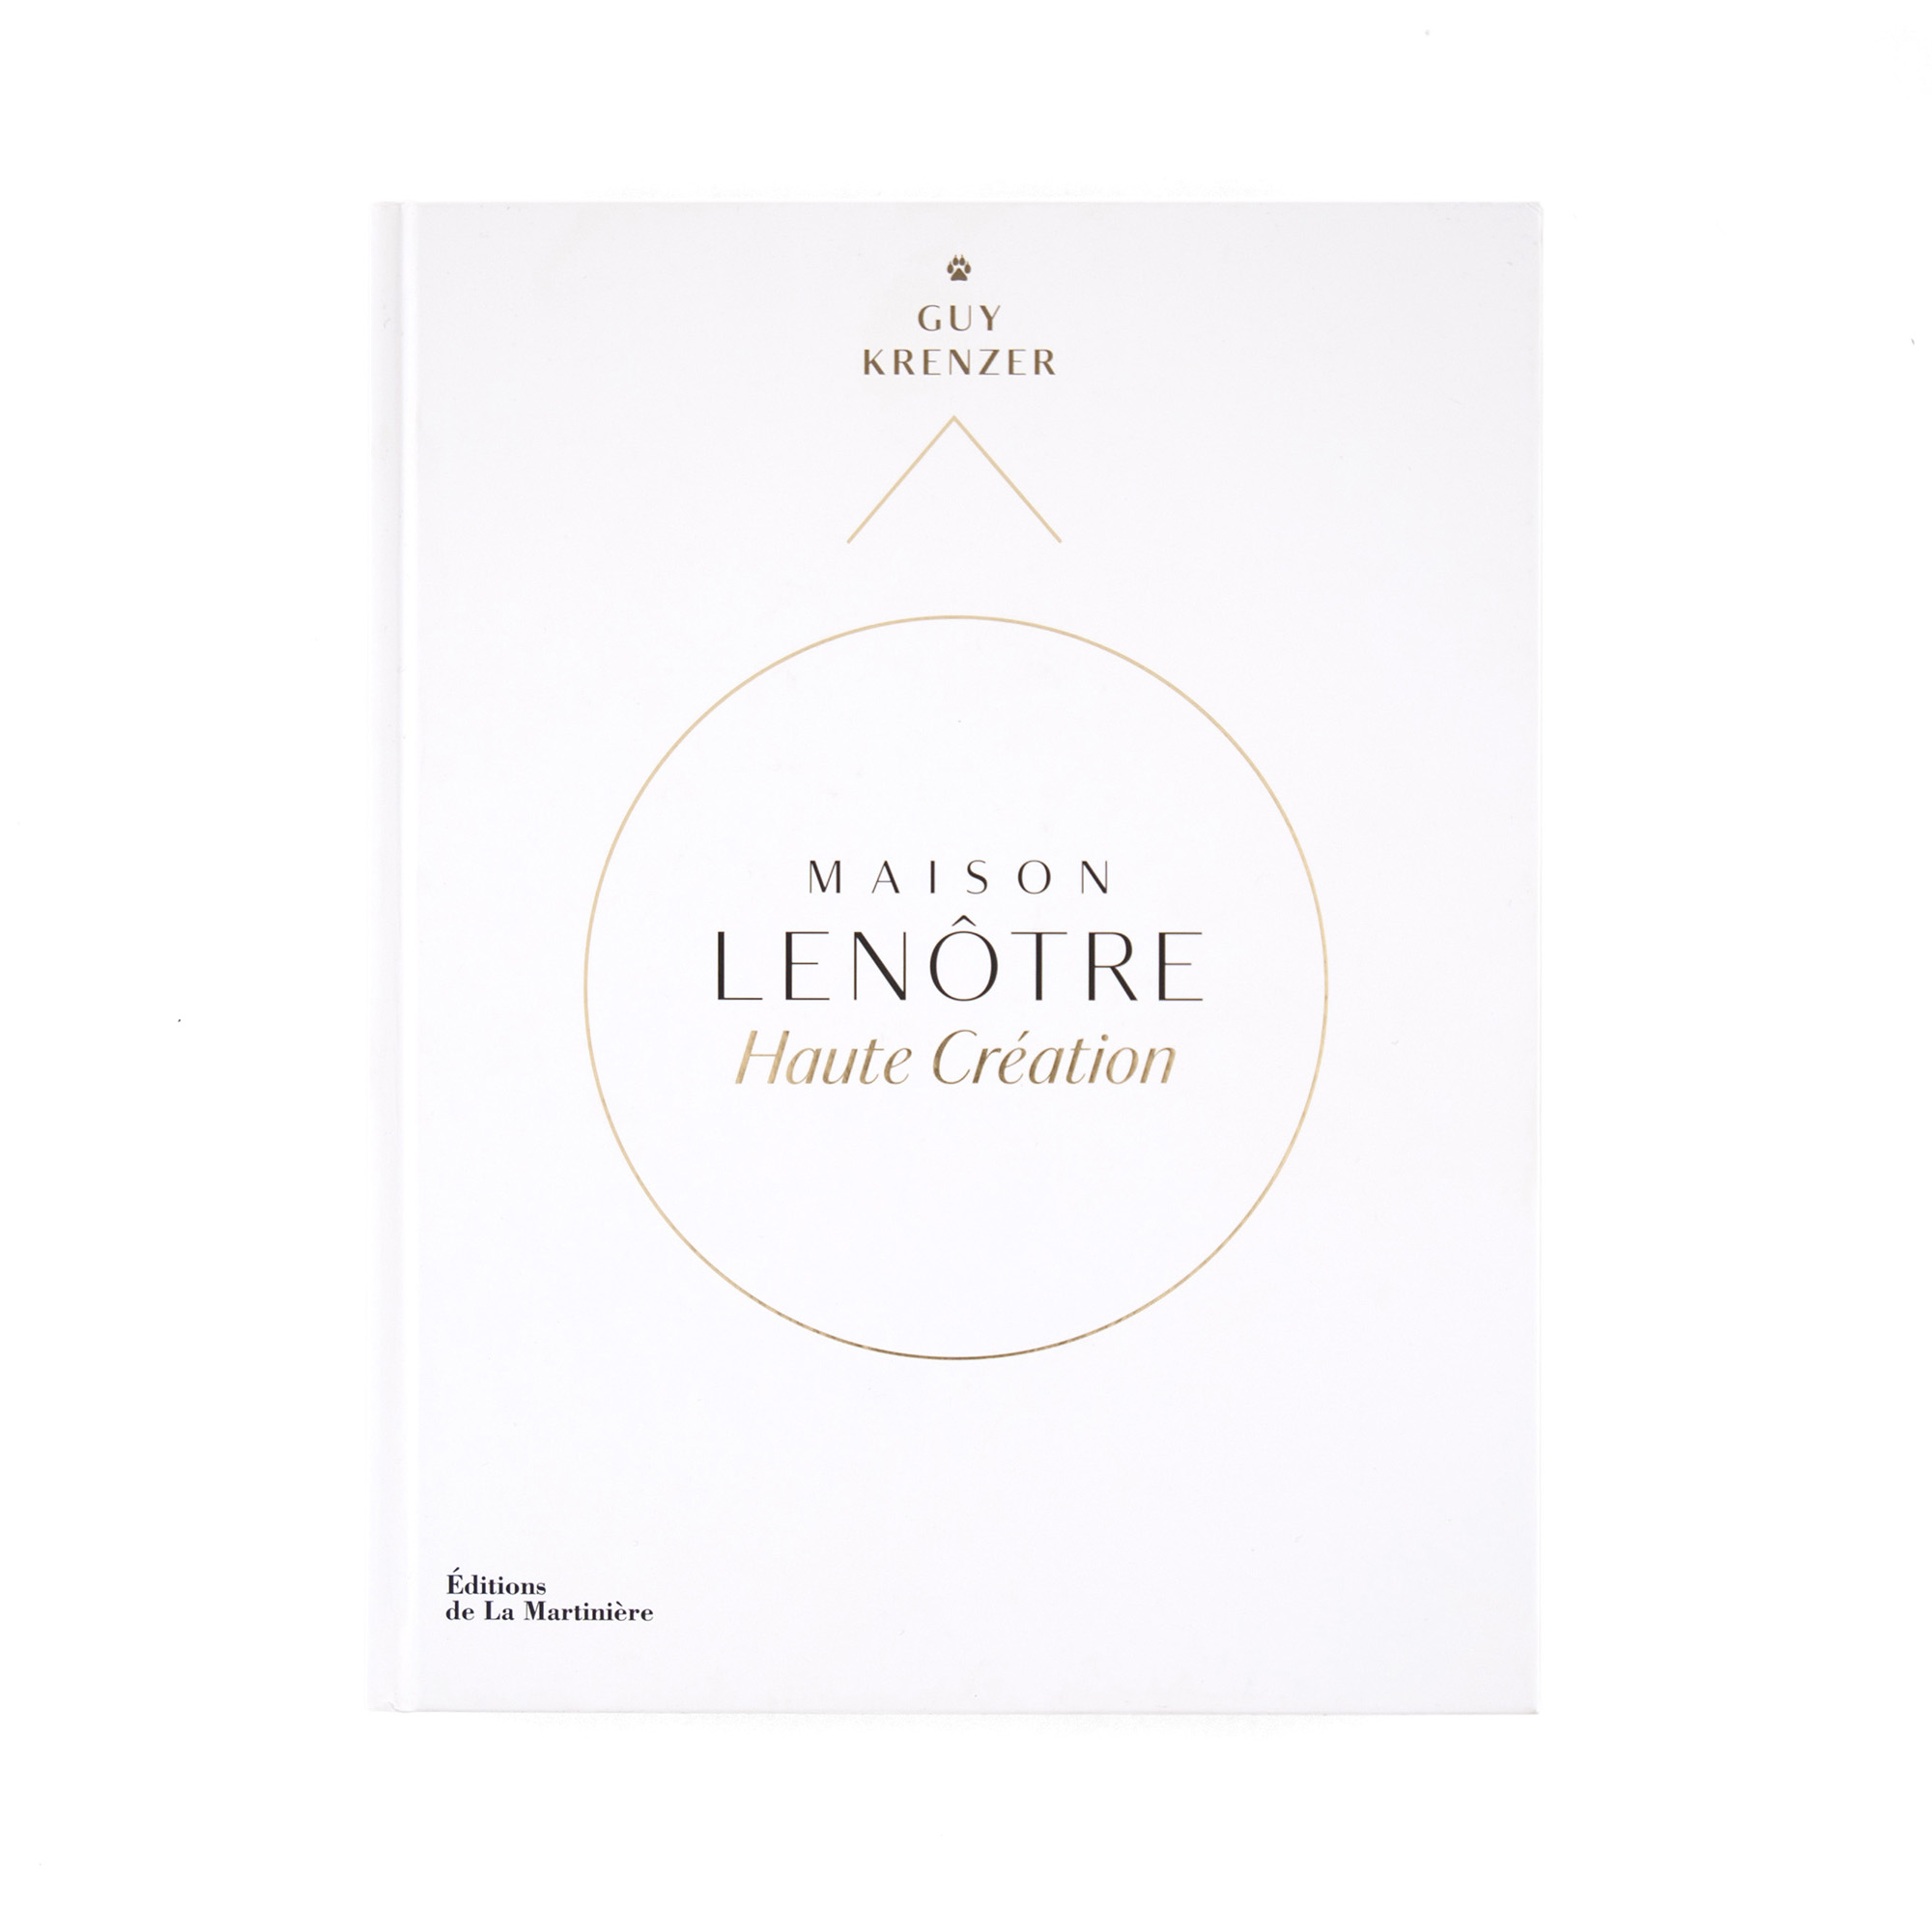   Maison Lenôtre Haute Création   Guy Krenzer  Éditions de La Martinière 408 pages 